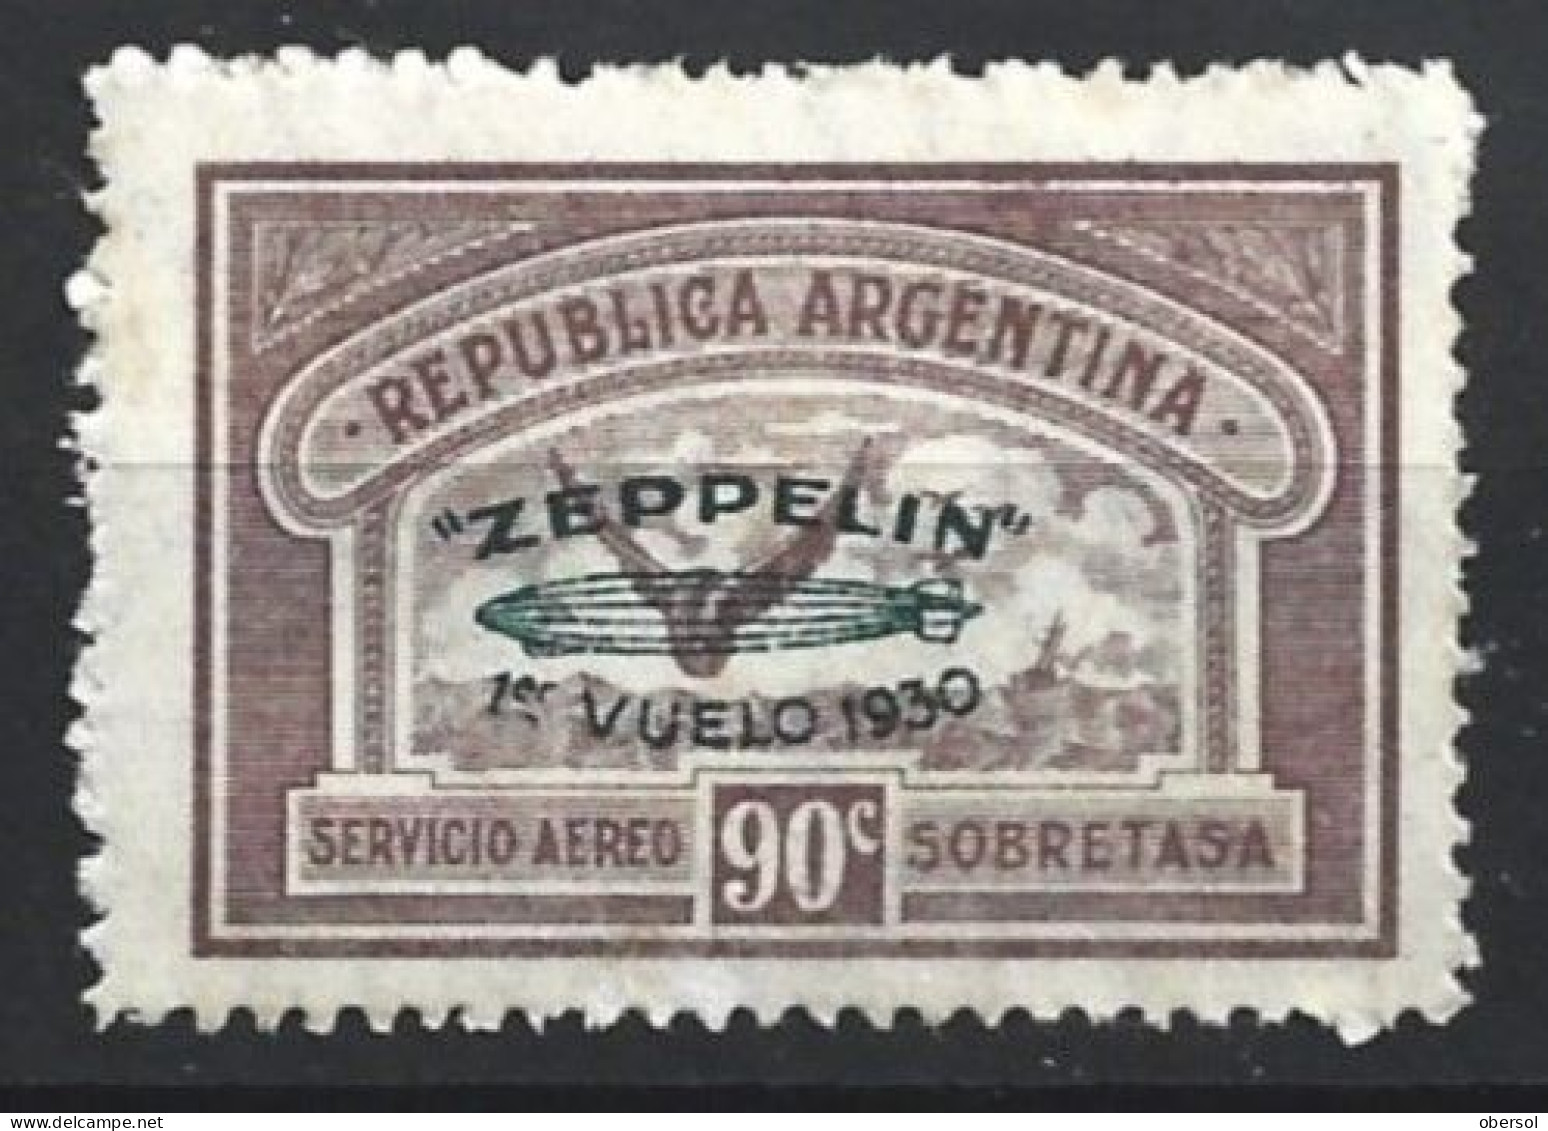 Argentina 1930 Zeppelin Green Overprint 90c MH Stamp - Ongebruikt